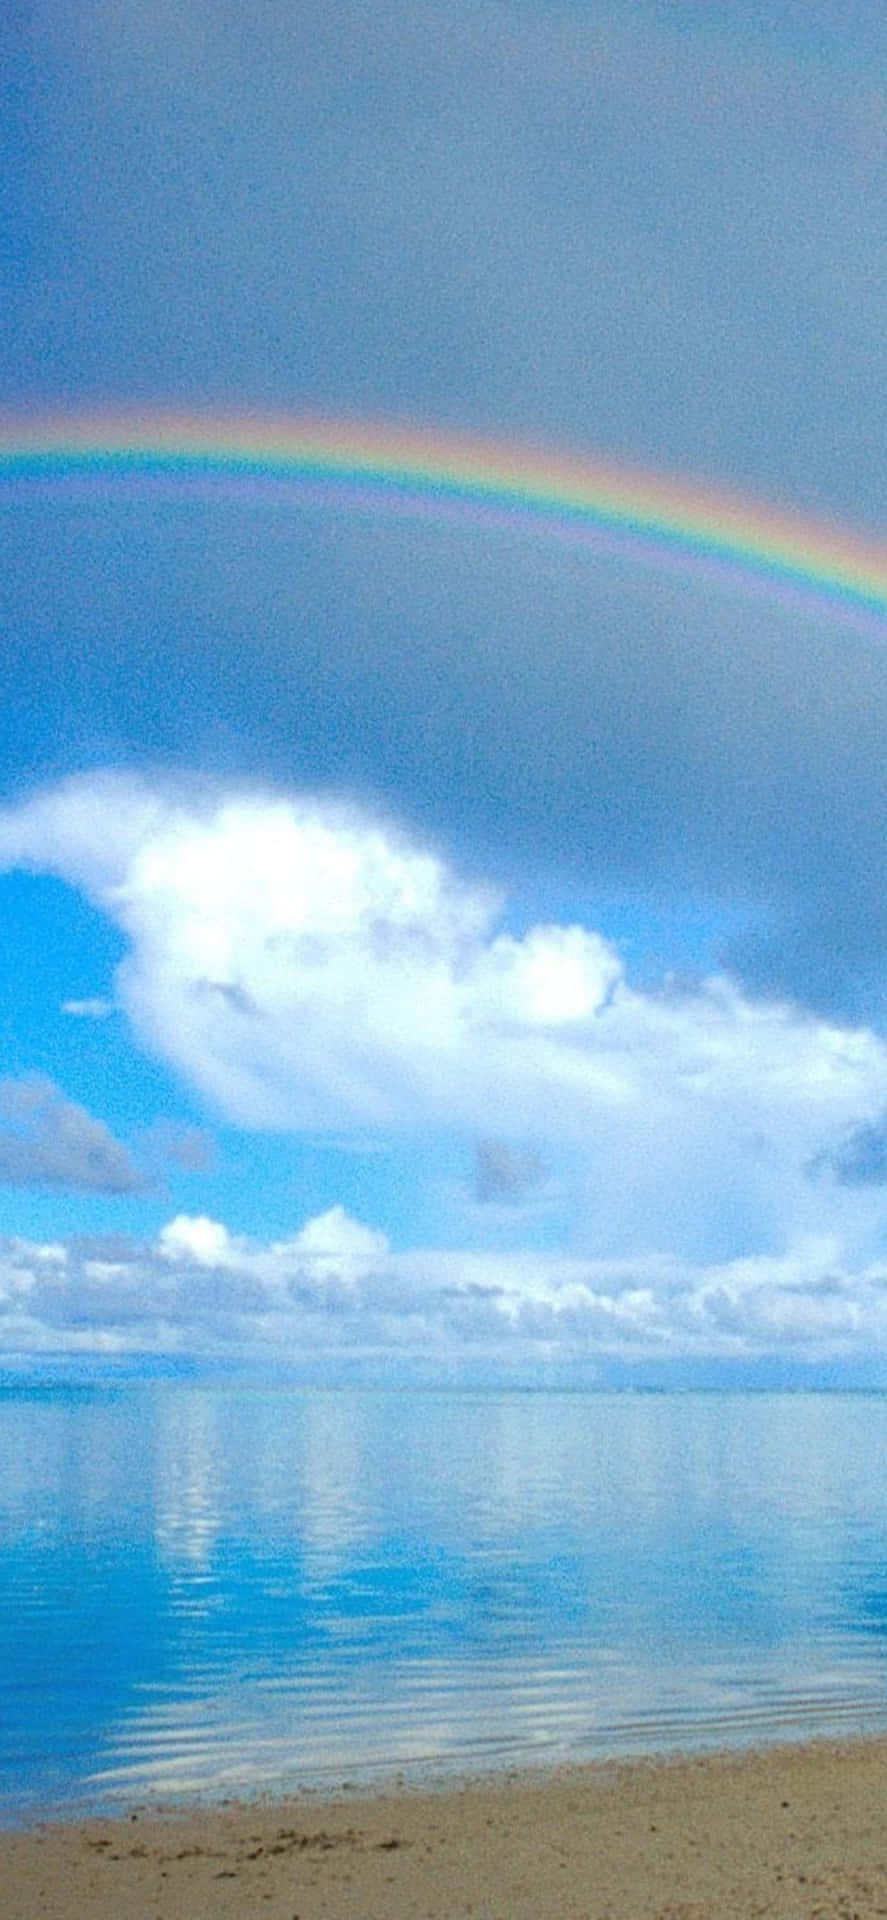 A Rainbow Over A Beach Background